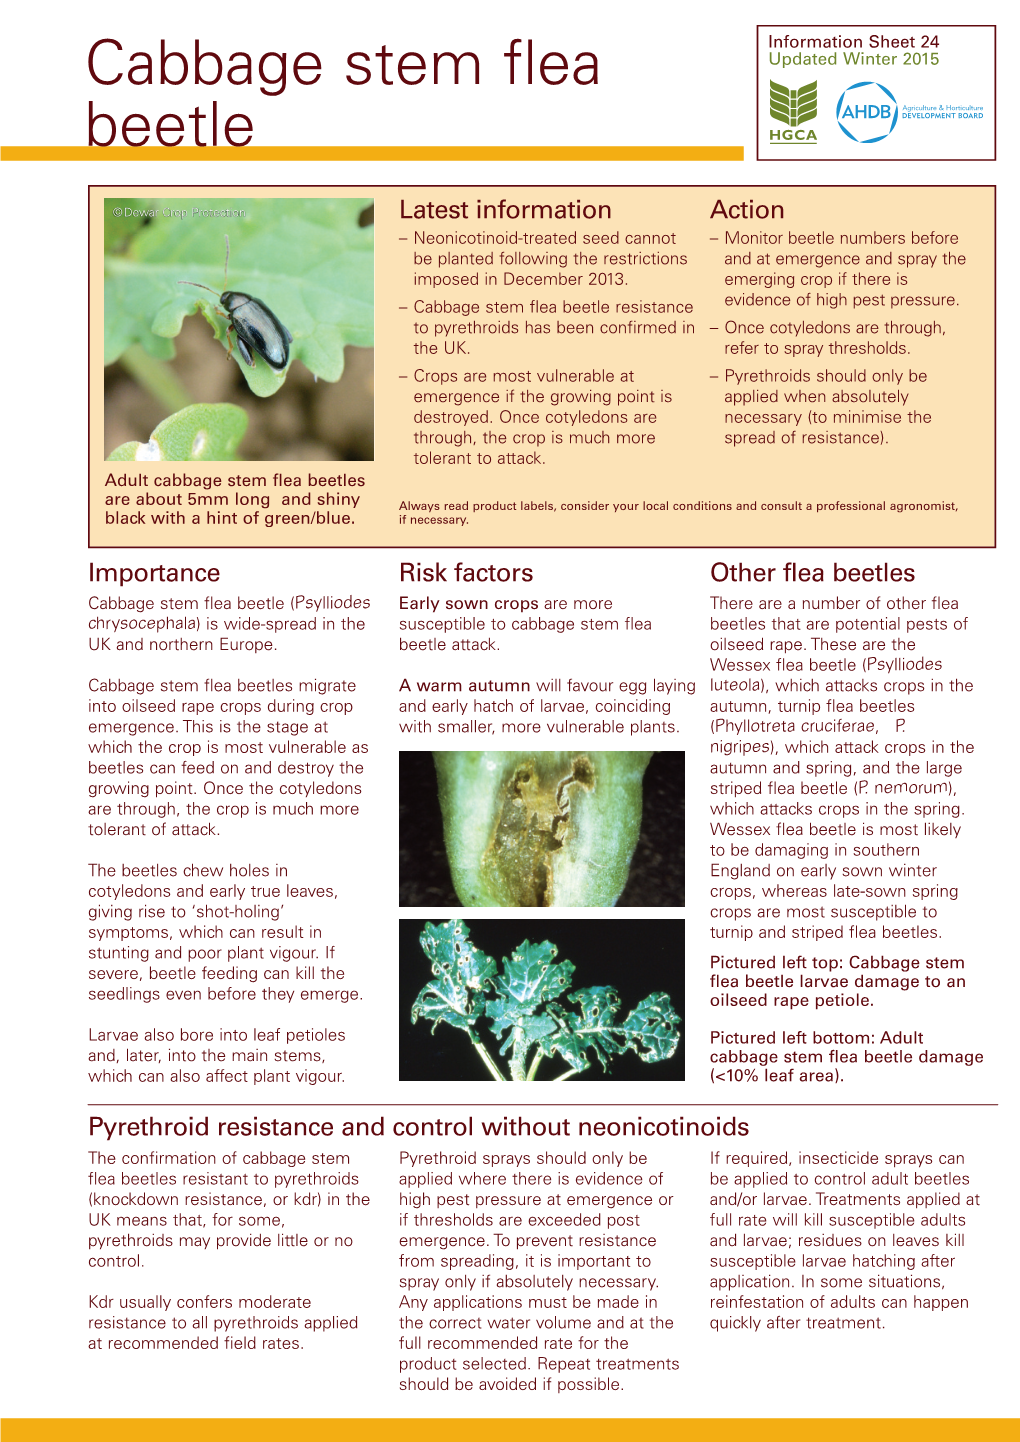 Cabbage Stem Flea Beetle Resistance Evidence of High Pest Pressure